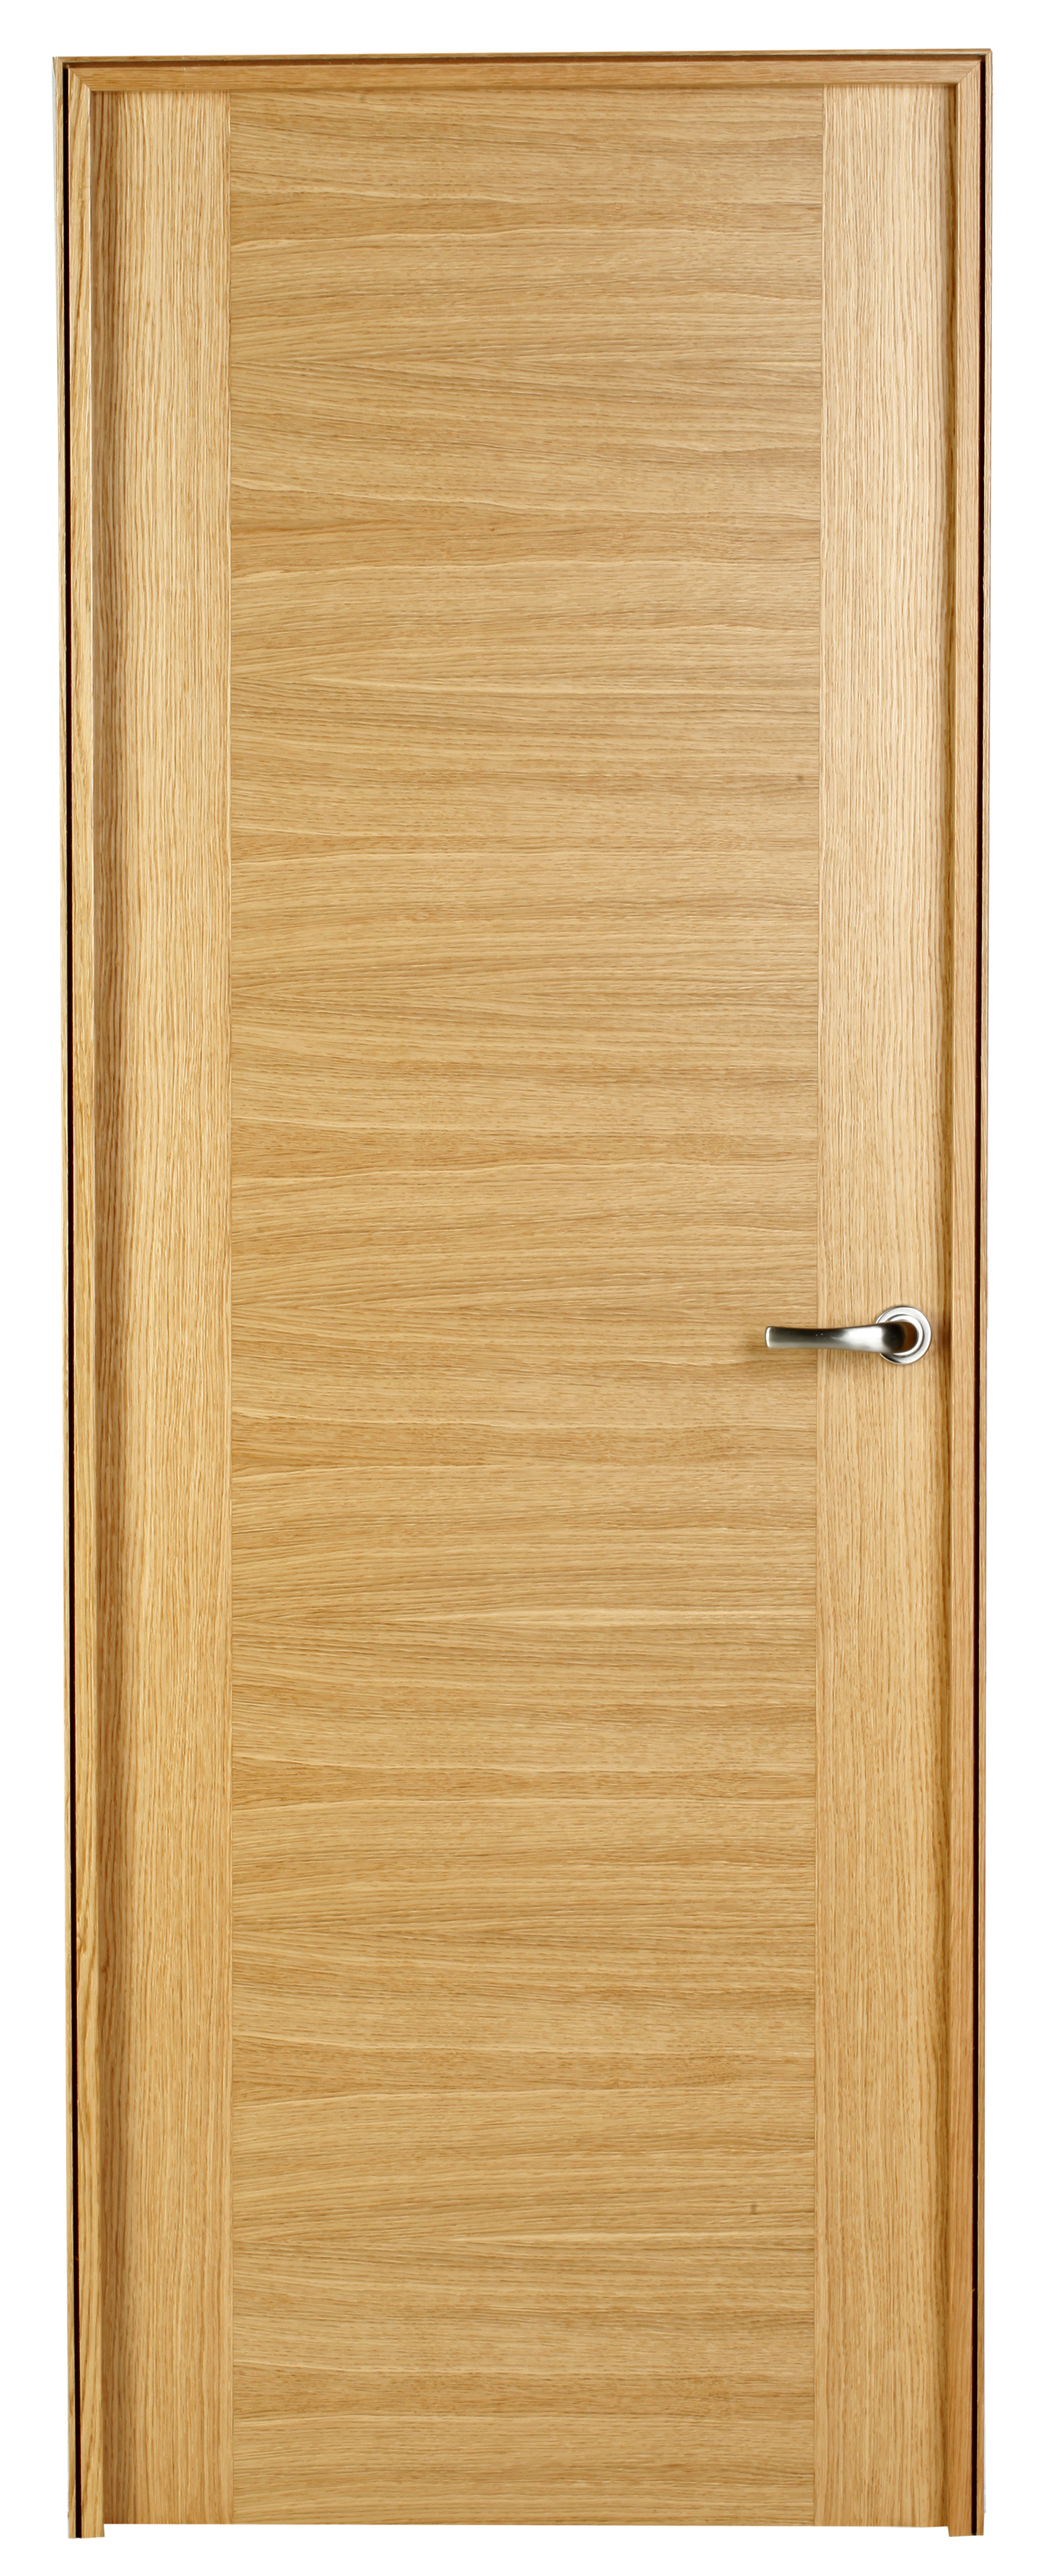 Puerta niza roble de apertura izquierda de 62.50 cm